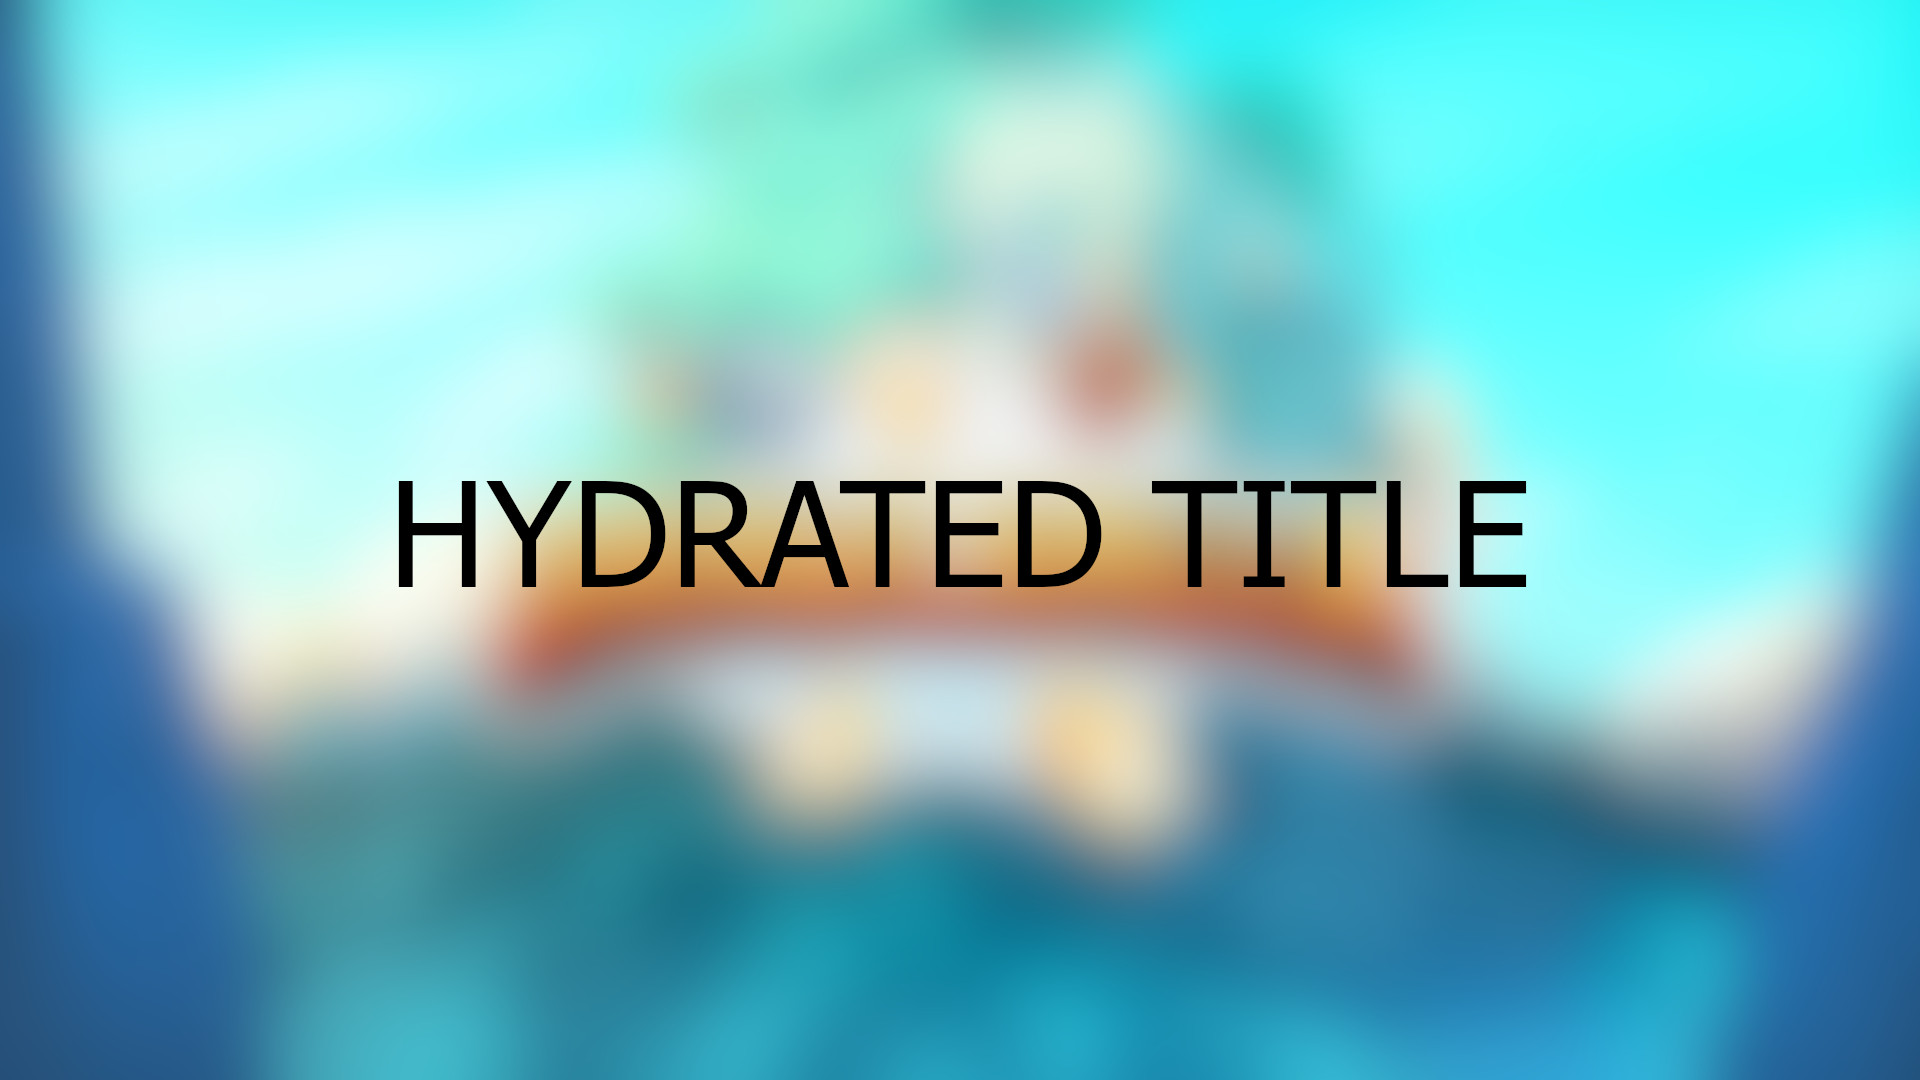 Brawlhalla - Hydrated Title DLC CD Key, 0.29 usd